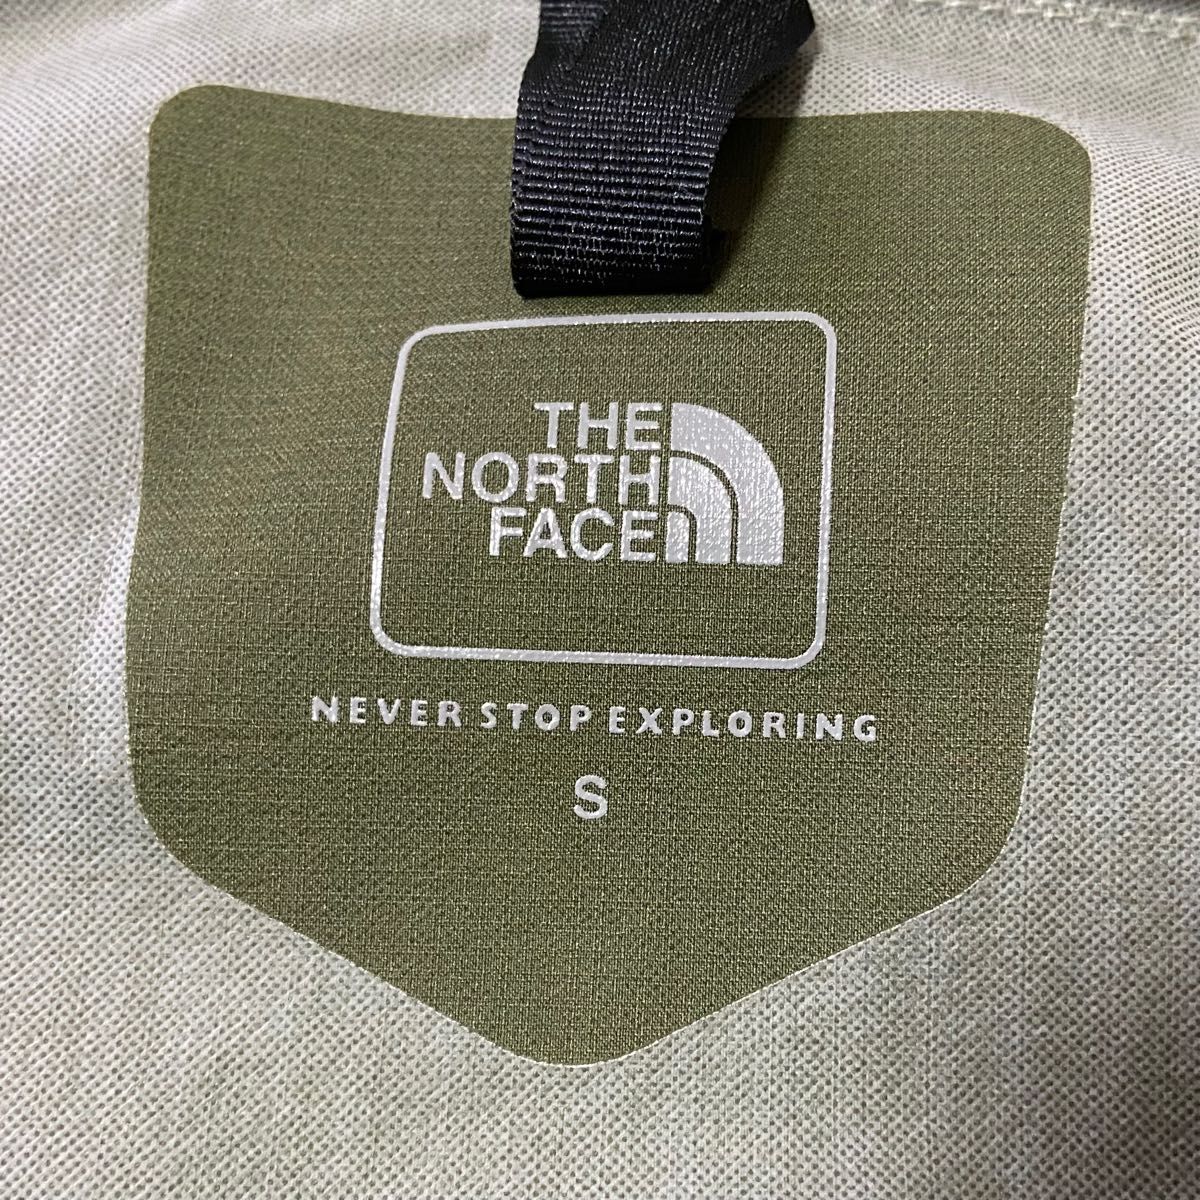 THE NORTH FACE ザノースフェイス ナイロンジャケット カーキ